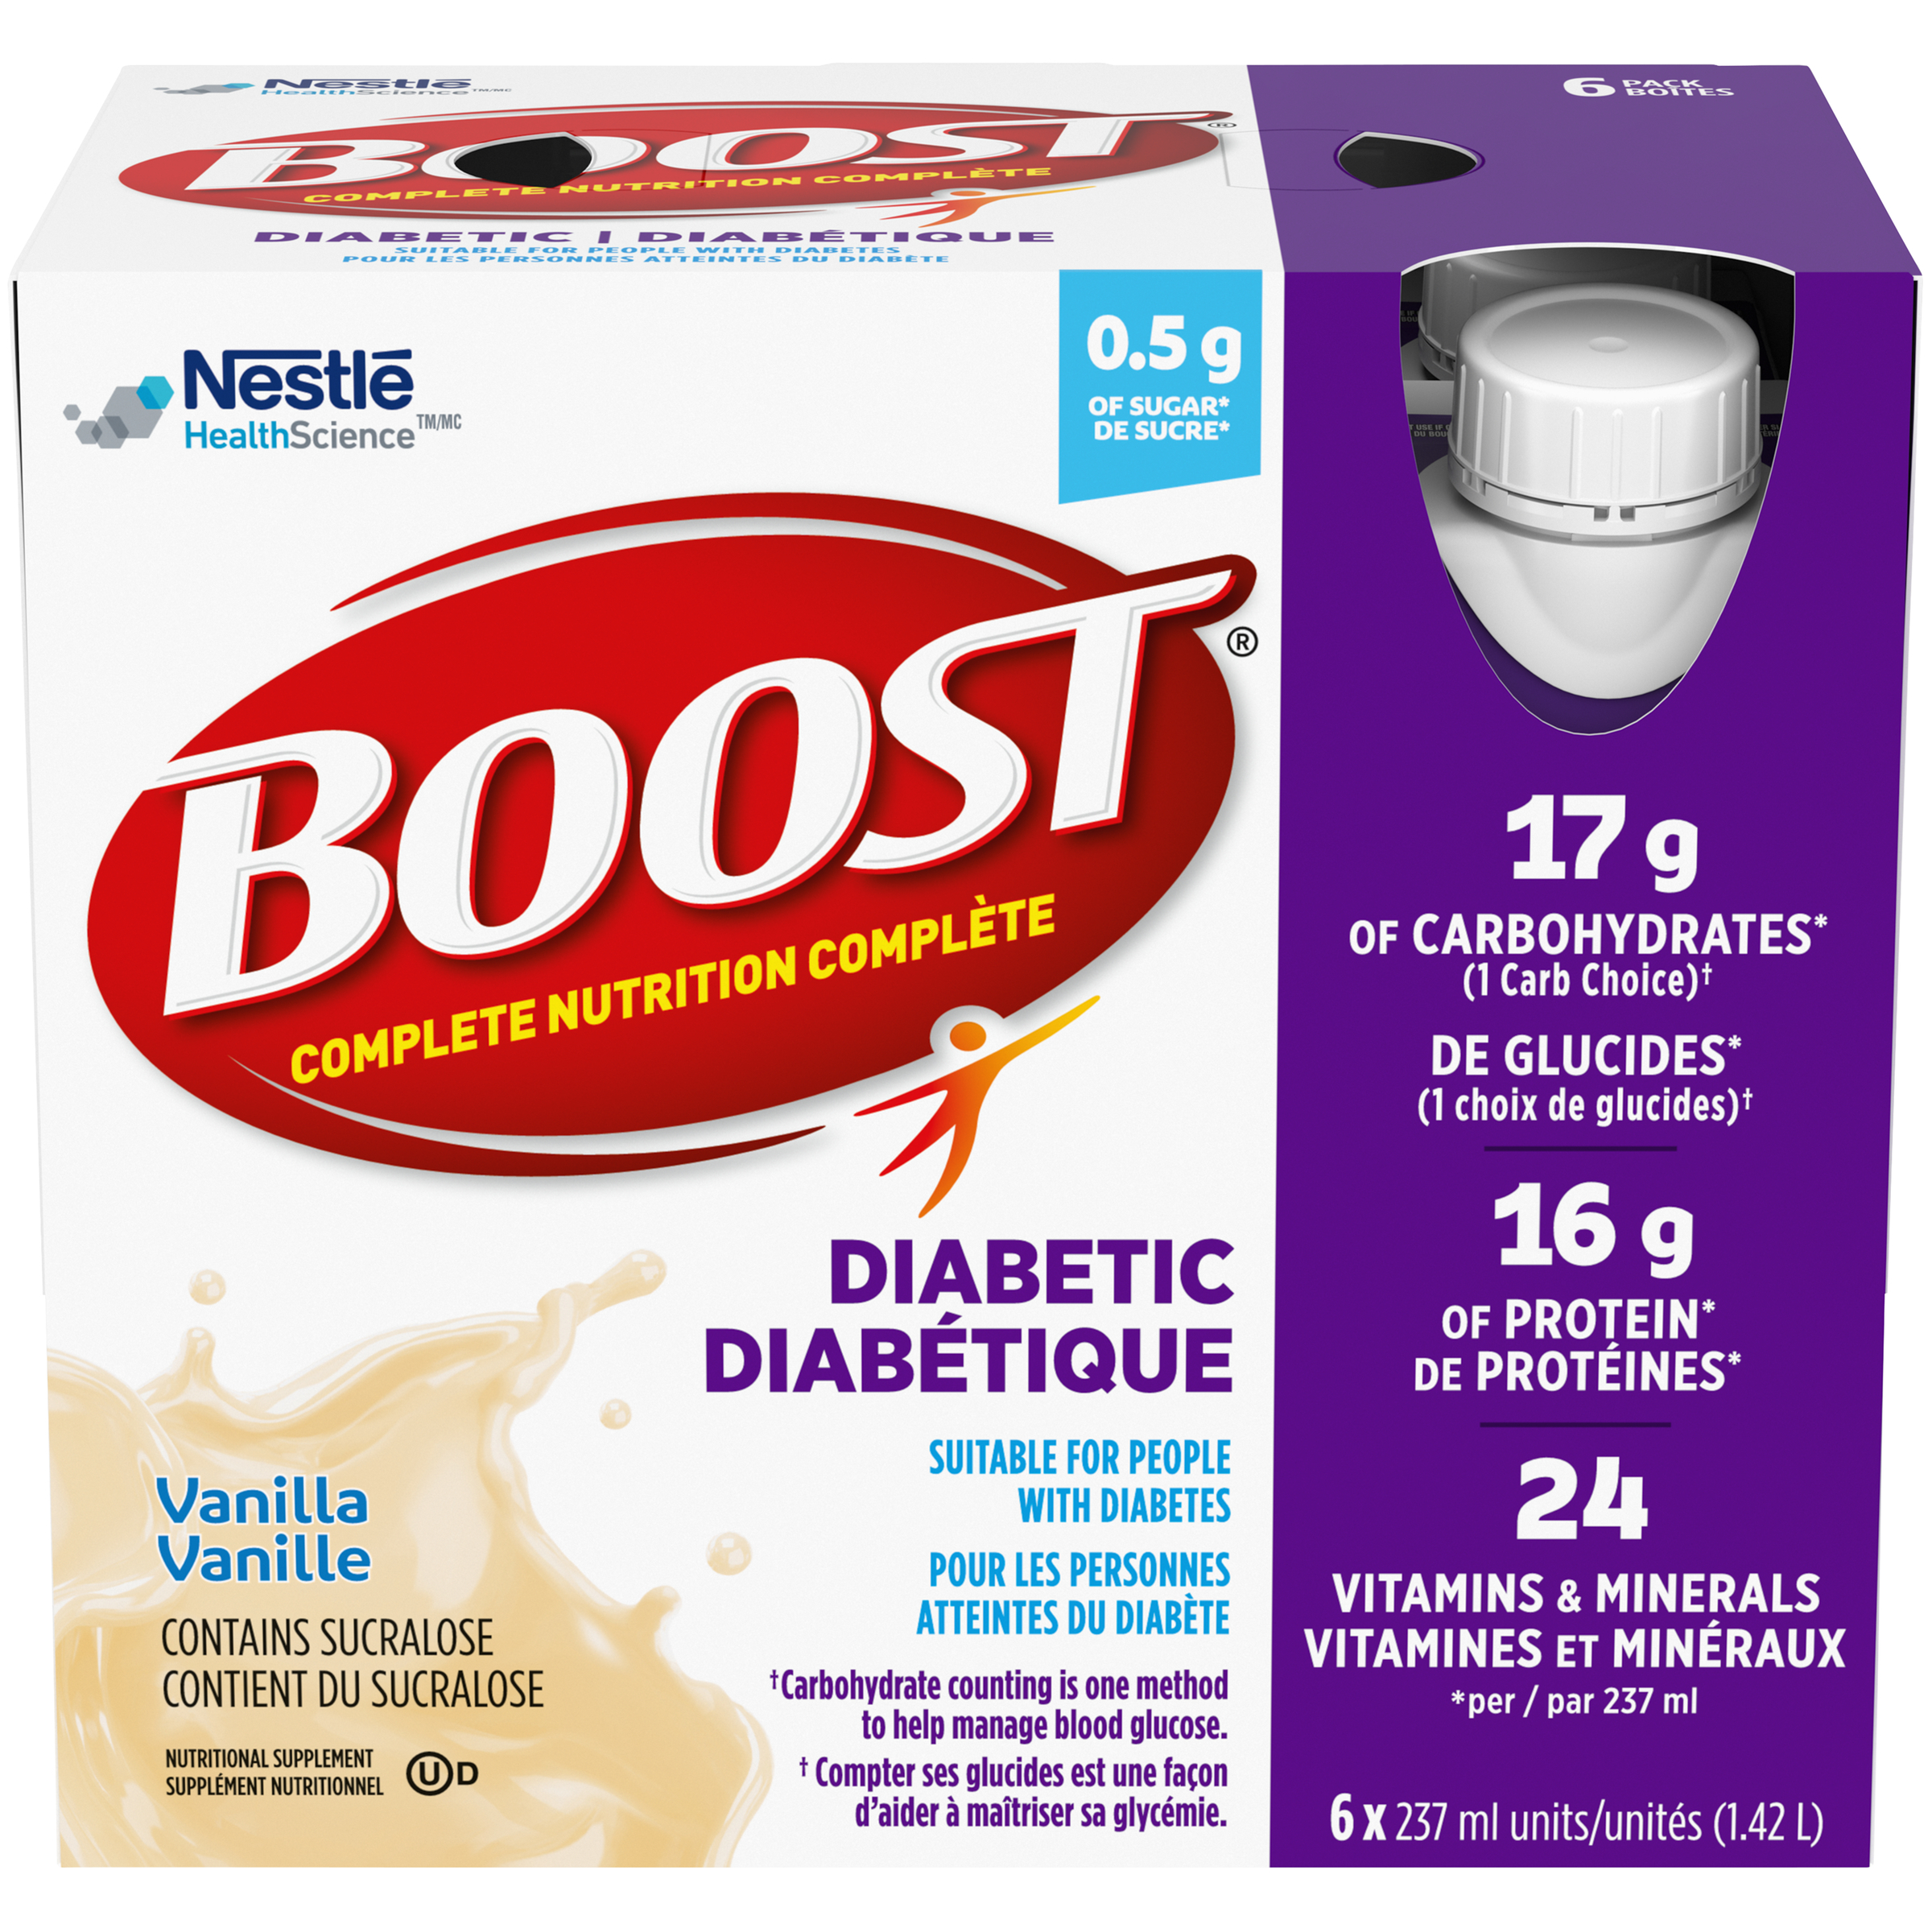 Diabetic Nutritional Supplement – Vanilla